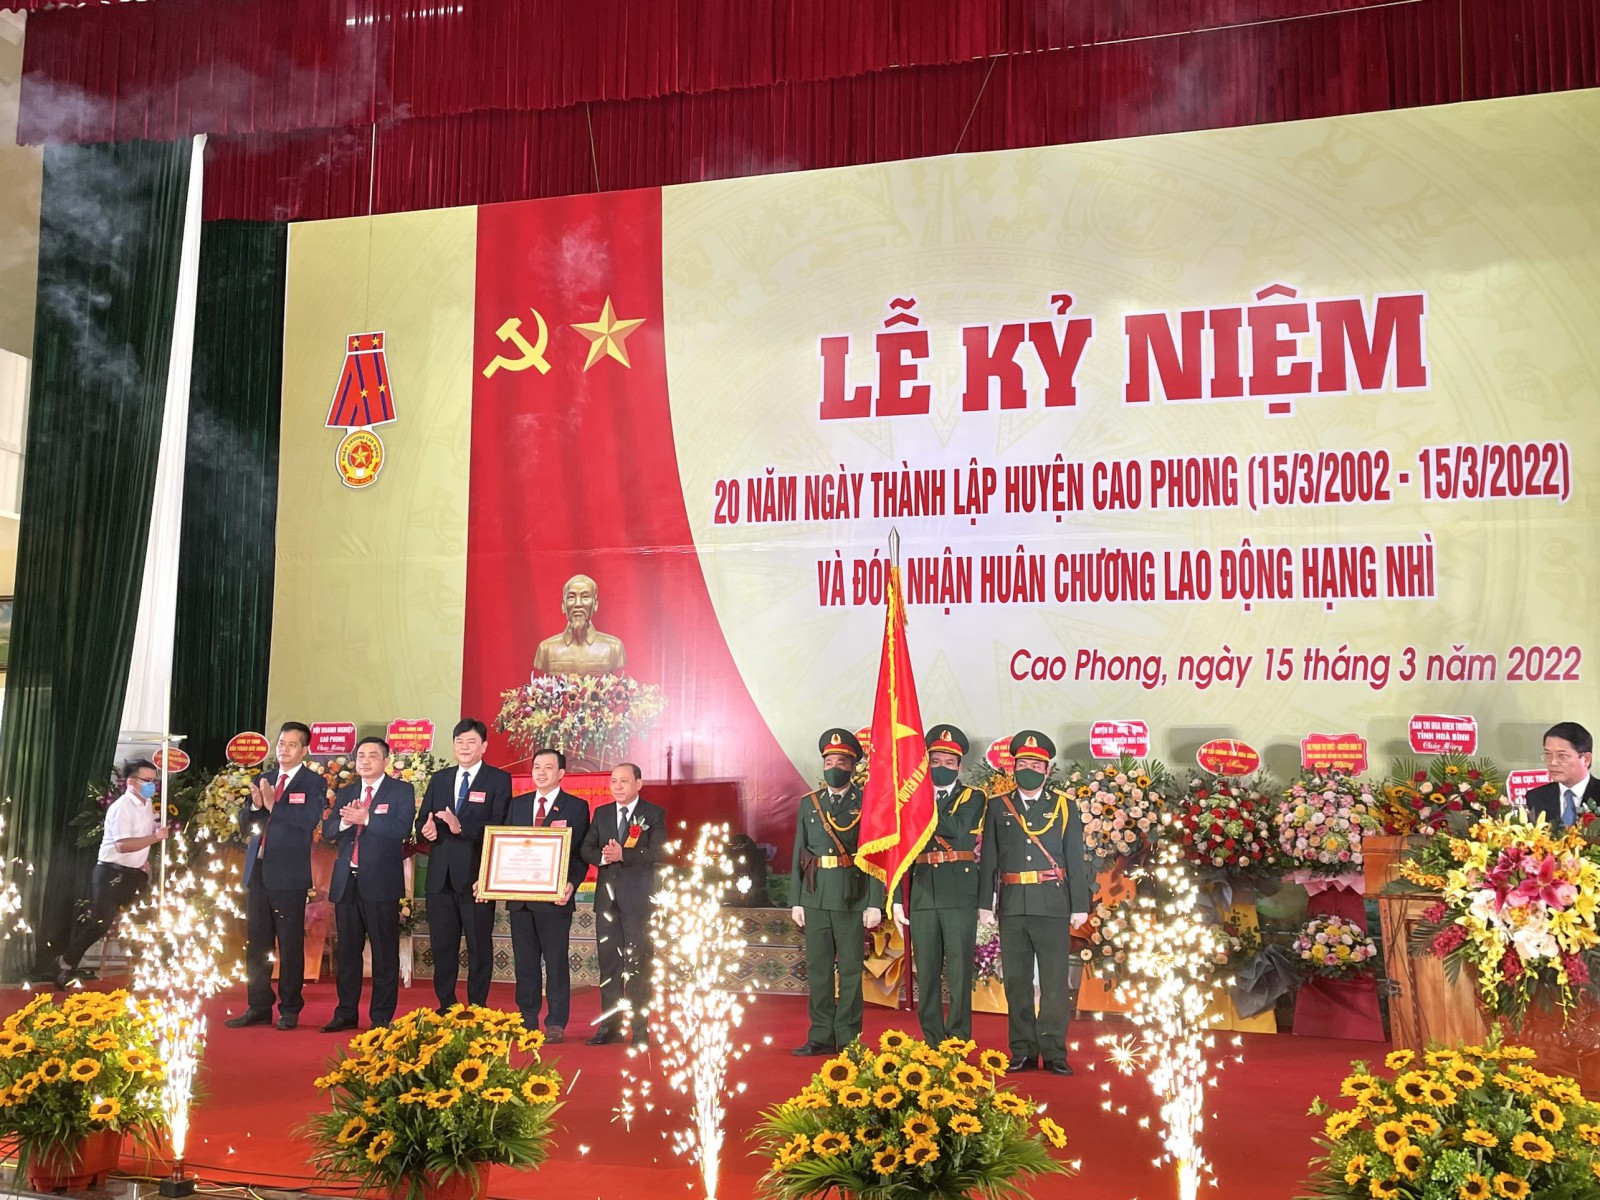 Nhân dịp này, huyện Cao Phong vinh dự được đón Huân chương Lao động hạng Nhì của Chủ tịch nước trao tặng.